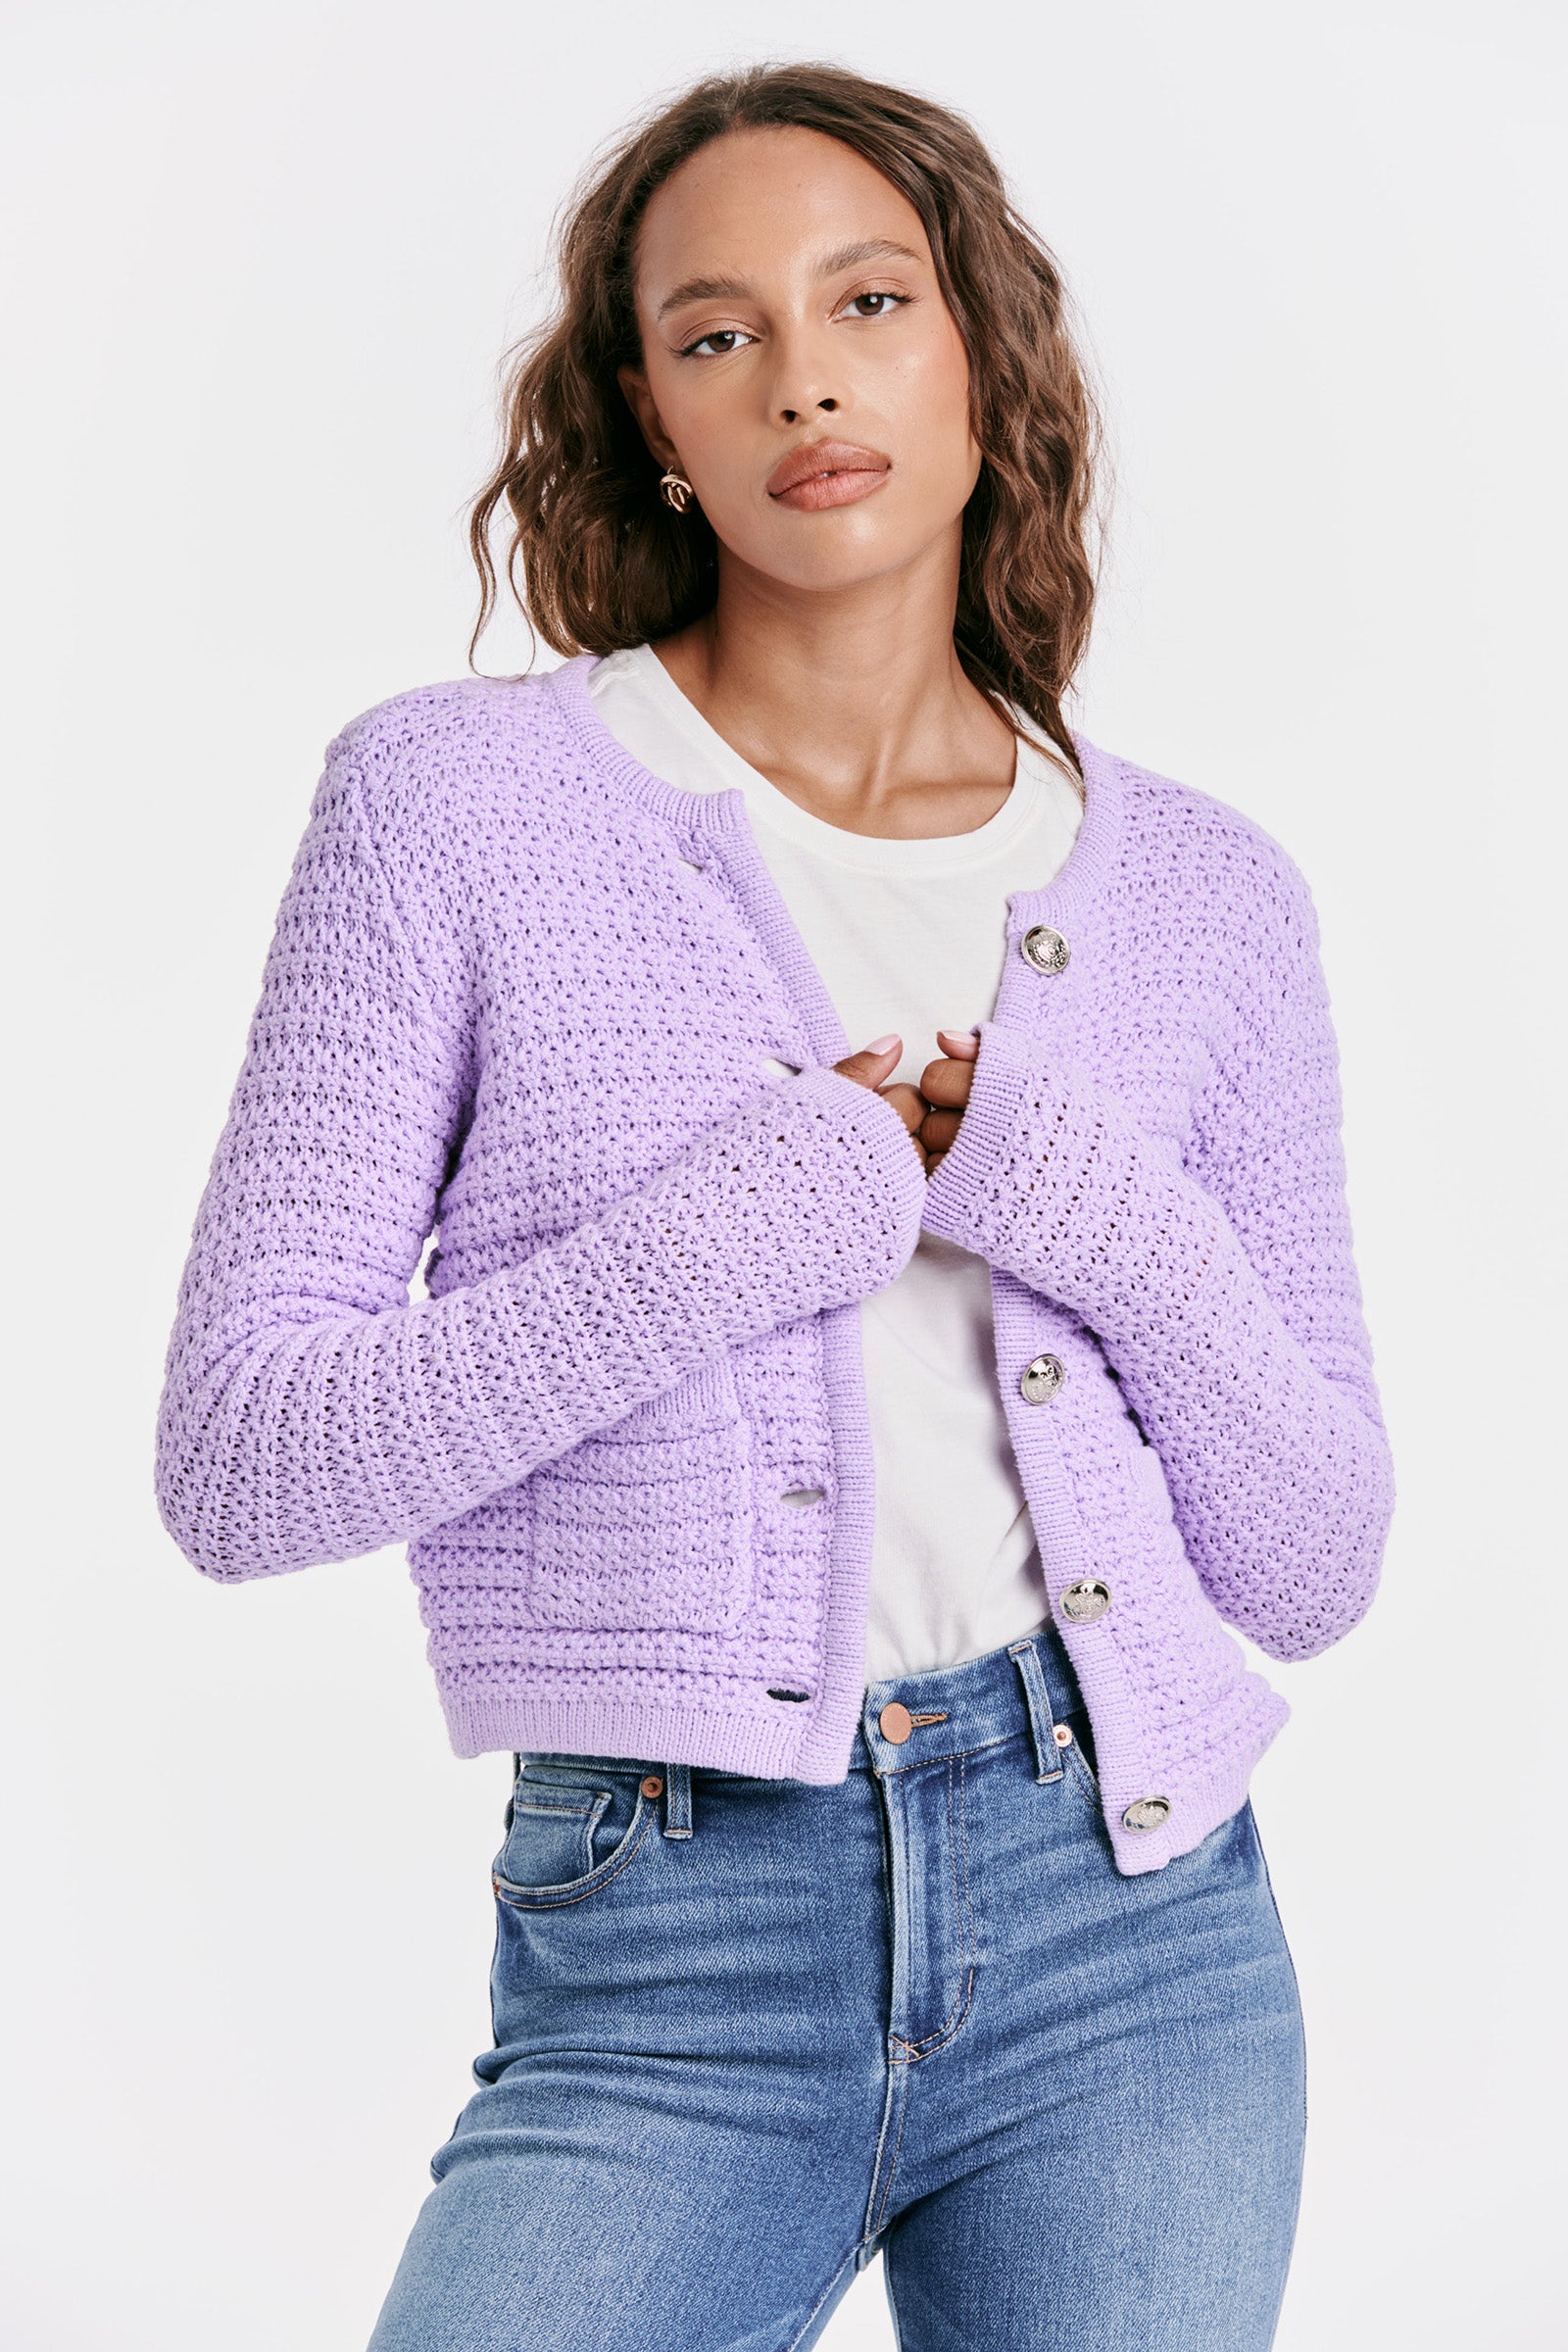 Cambria Sweater